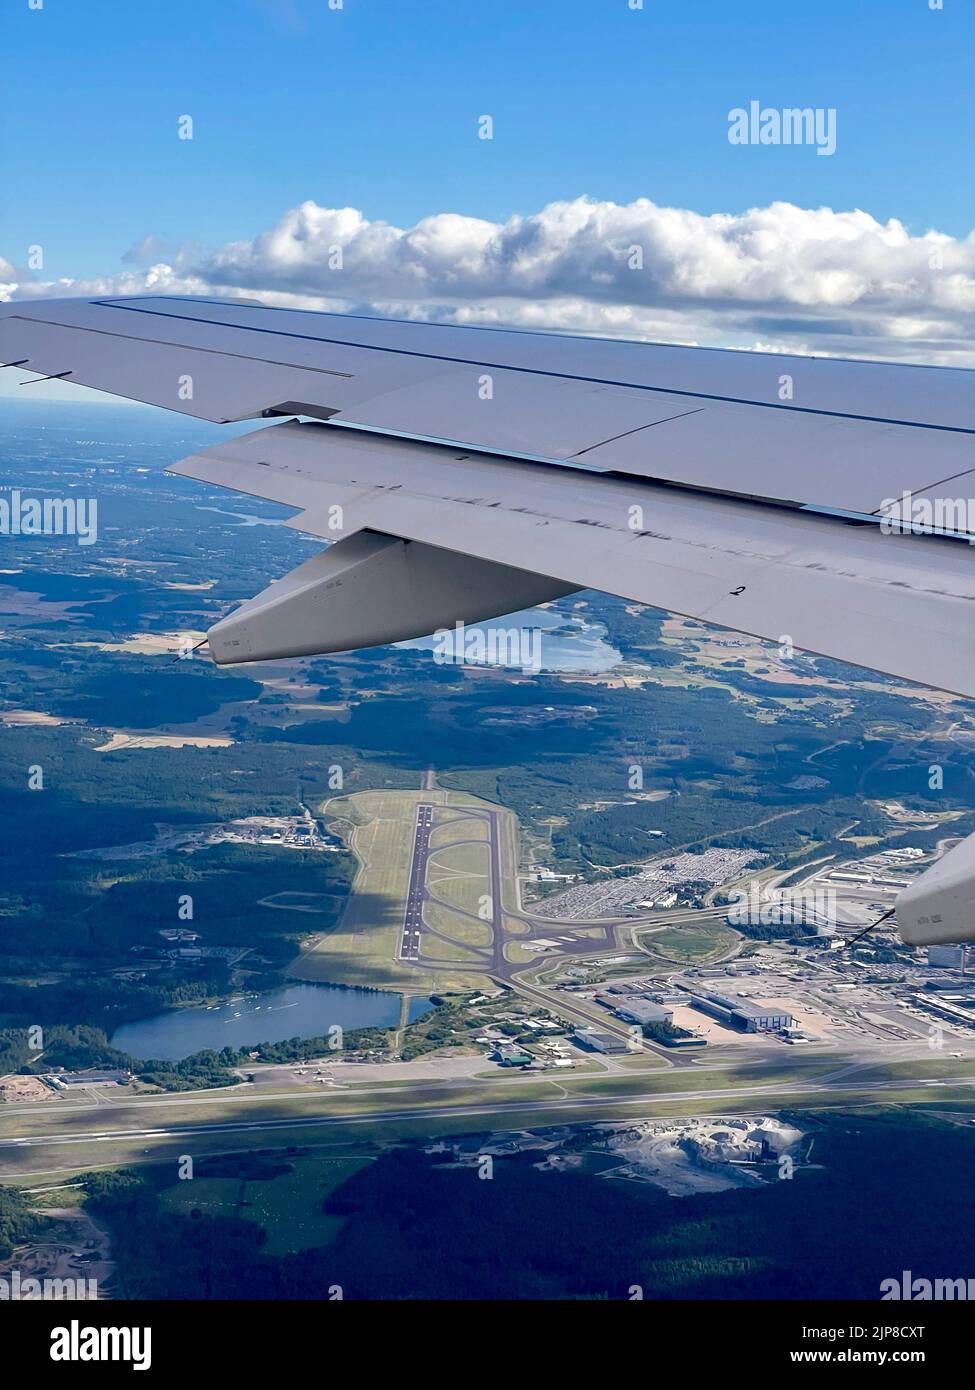 Aéroport de Stockholm Arlanda l'aéroport de Stockholm Arlanda (IATA: ARN, OACI: ESSA) est un aéroport international situé dans la municipalité de Sigtuna en Suède, Banque D'Images